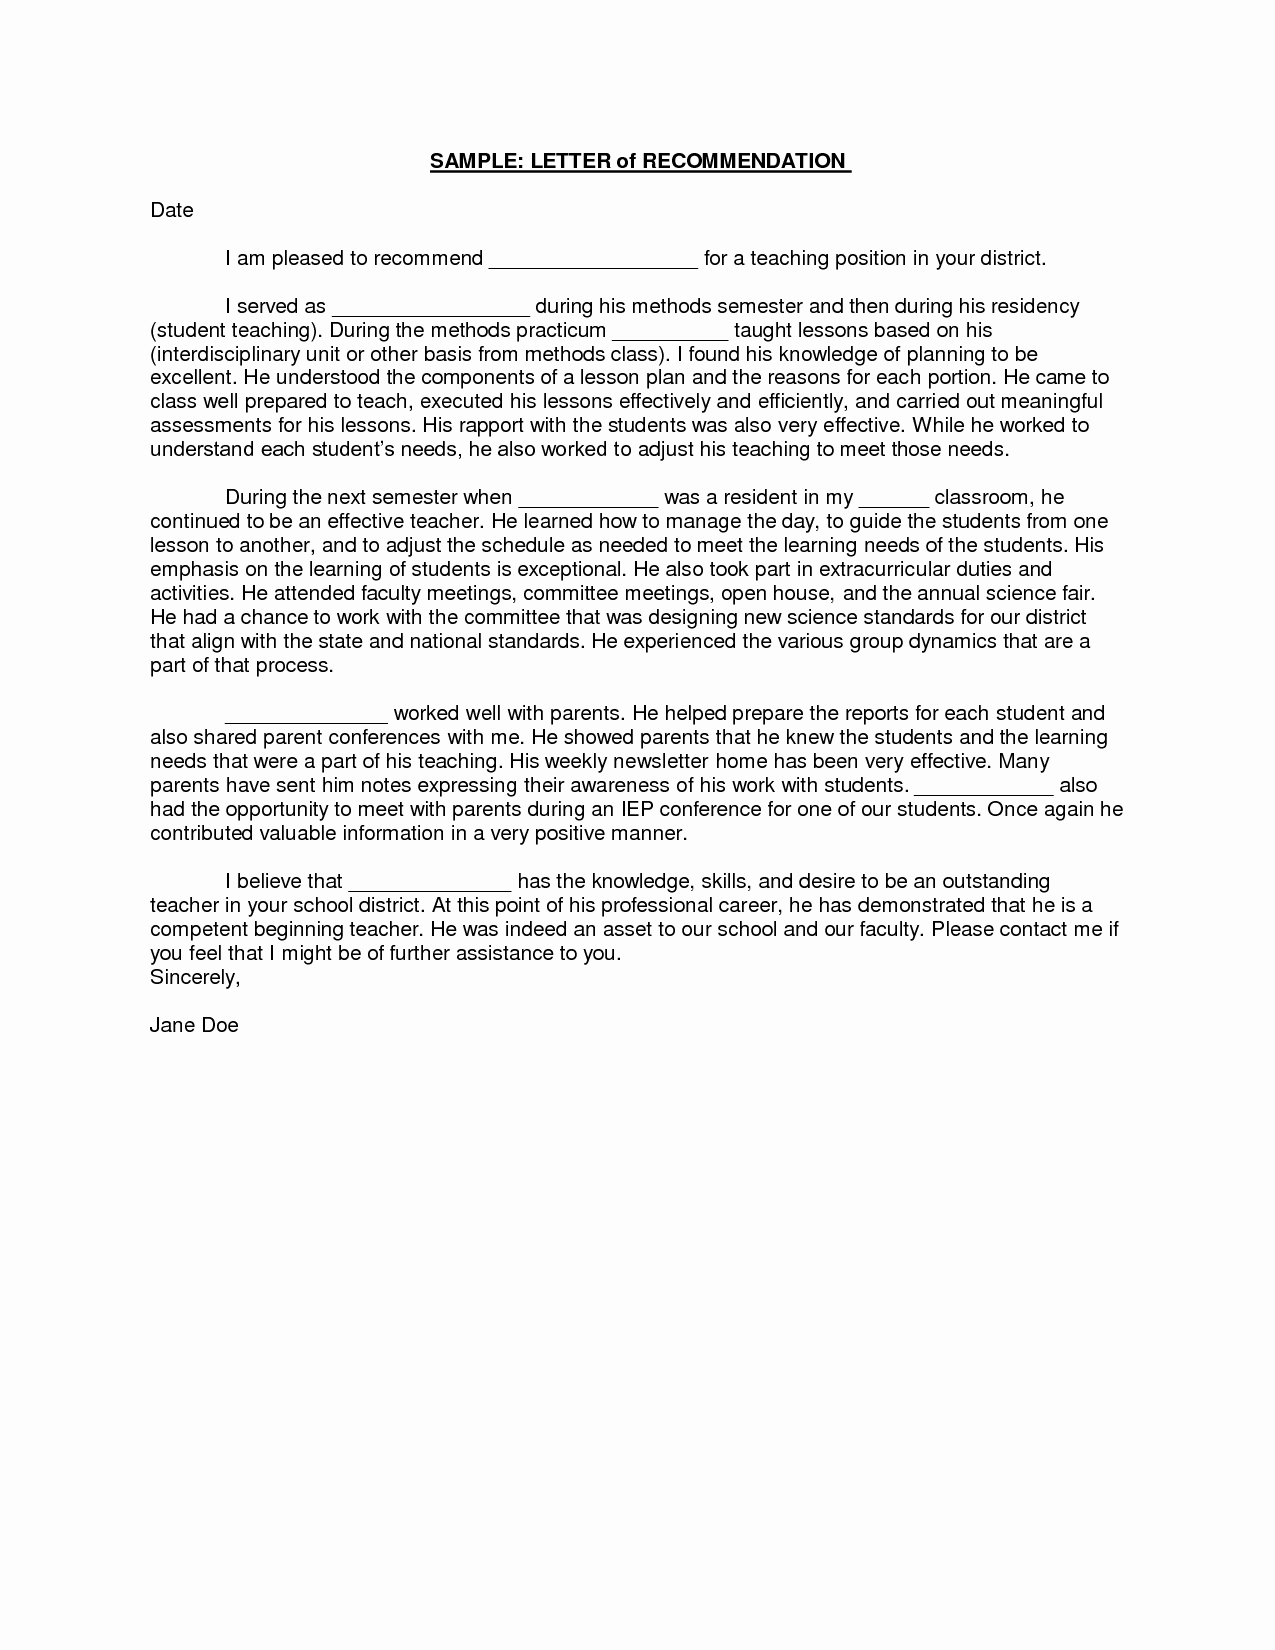 Reference Letter for Teachers Fresh Teacher Re Mendation Letter A Letter Of Re Mendation